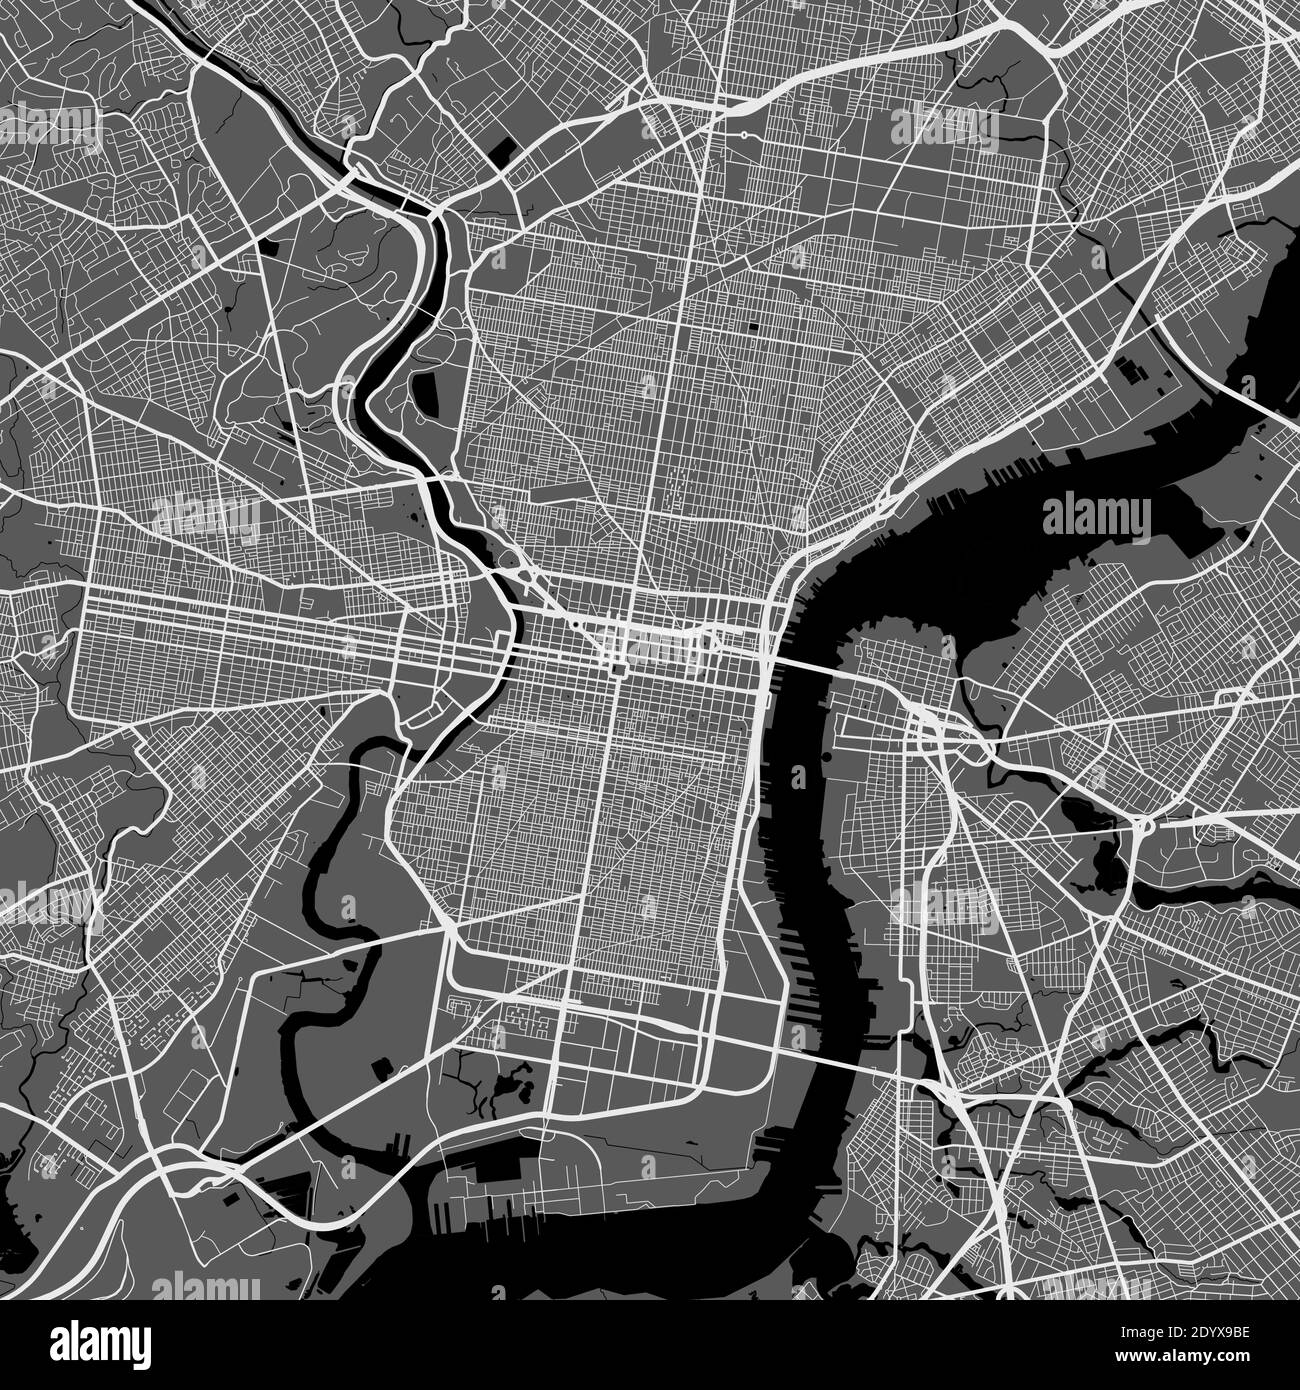 Mapa Urbano De Filadelfia Ilustración Vectorial Póster De Arte De Mapas De Filadelfia Imagen 7769